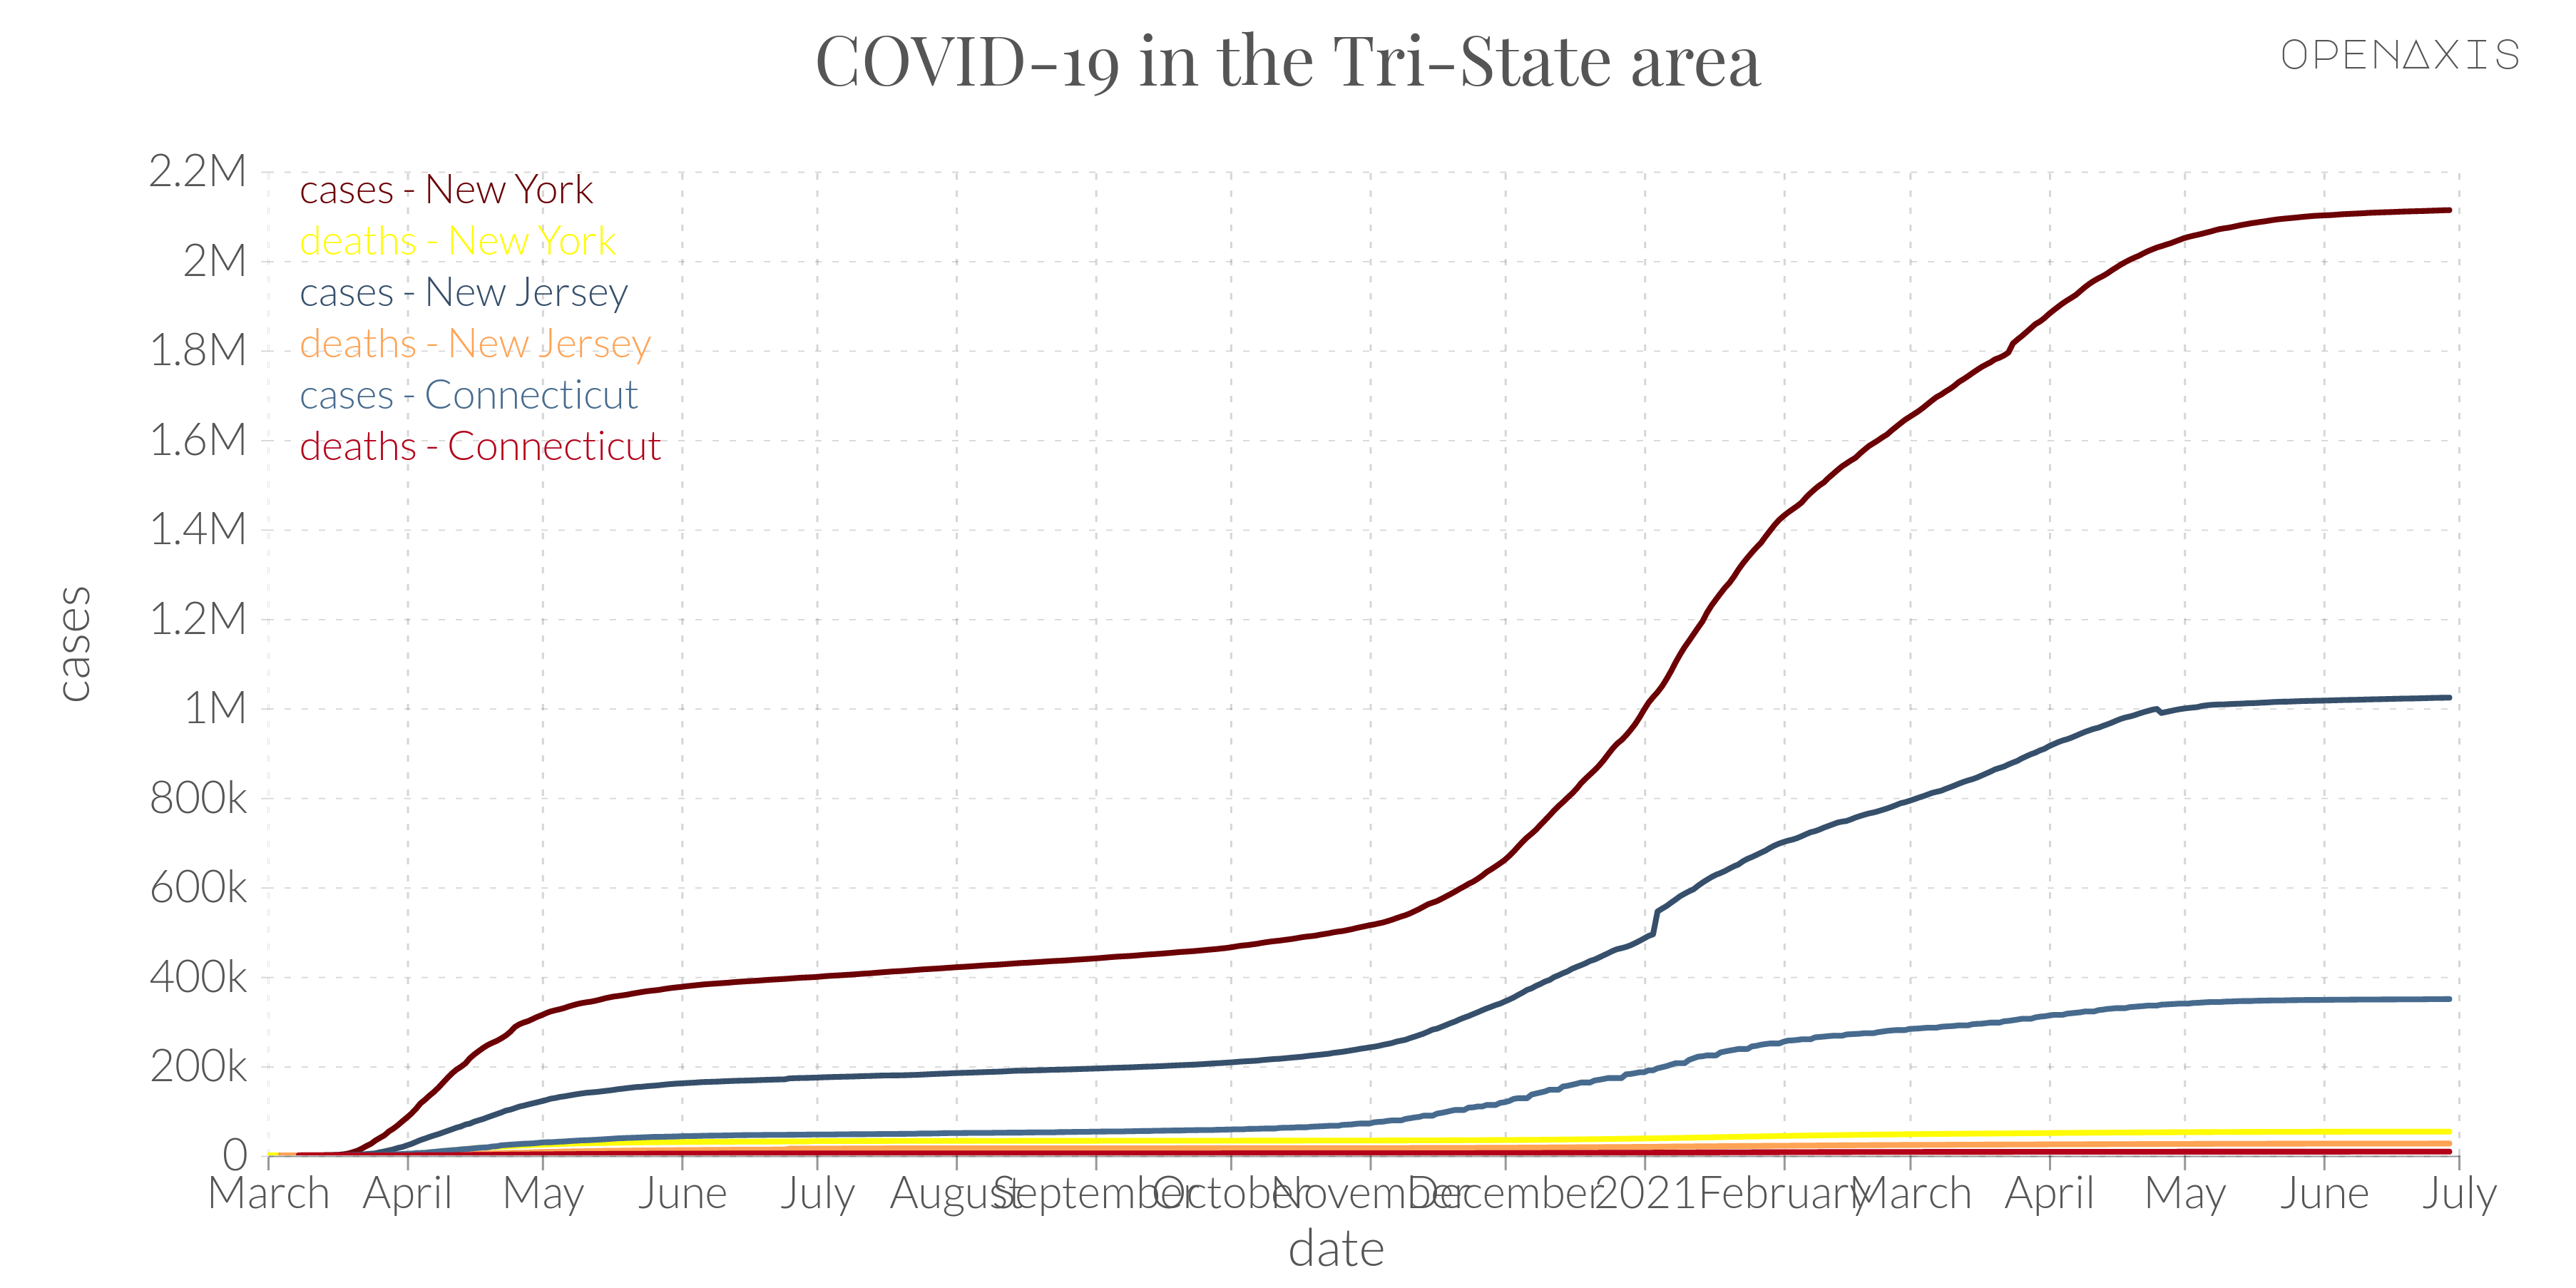 "COVID-19 in the Tri-State area"